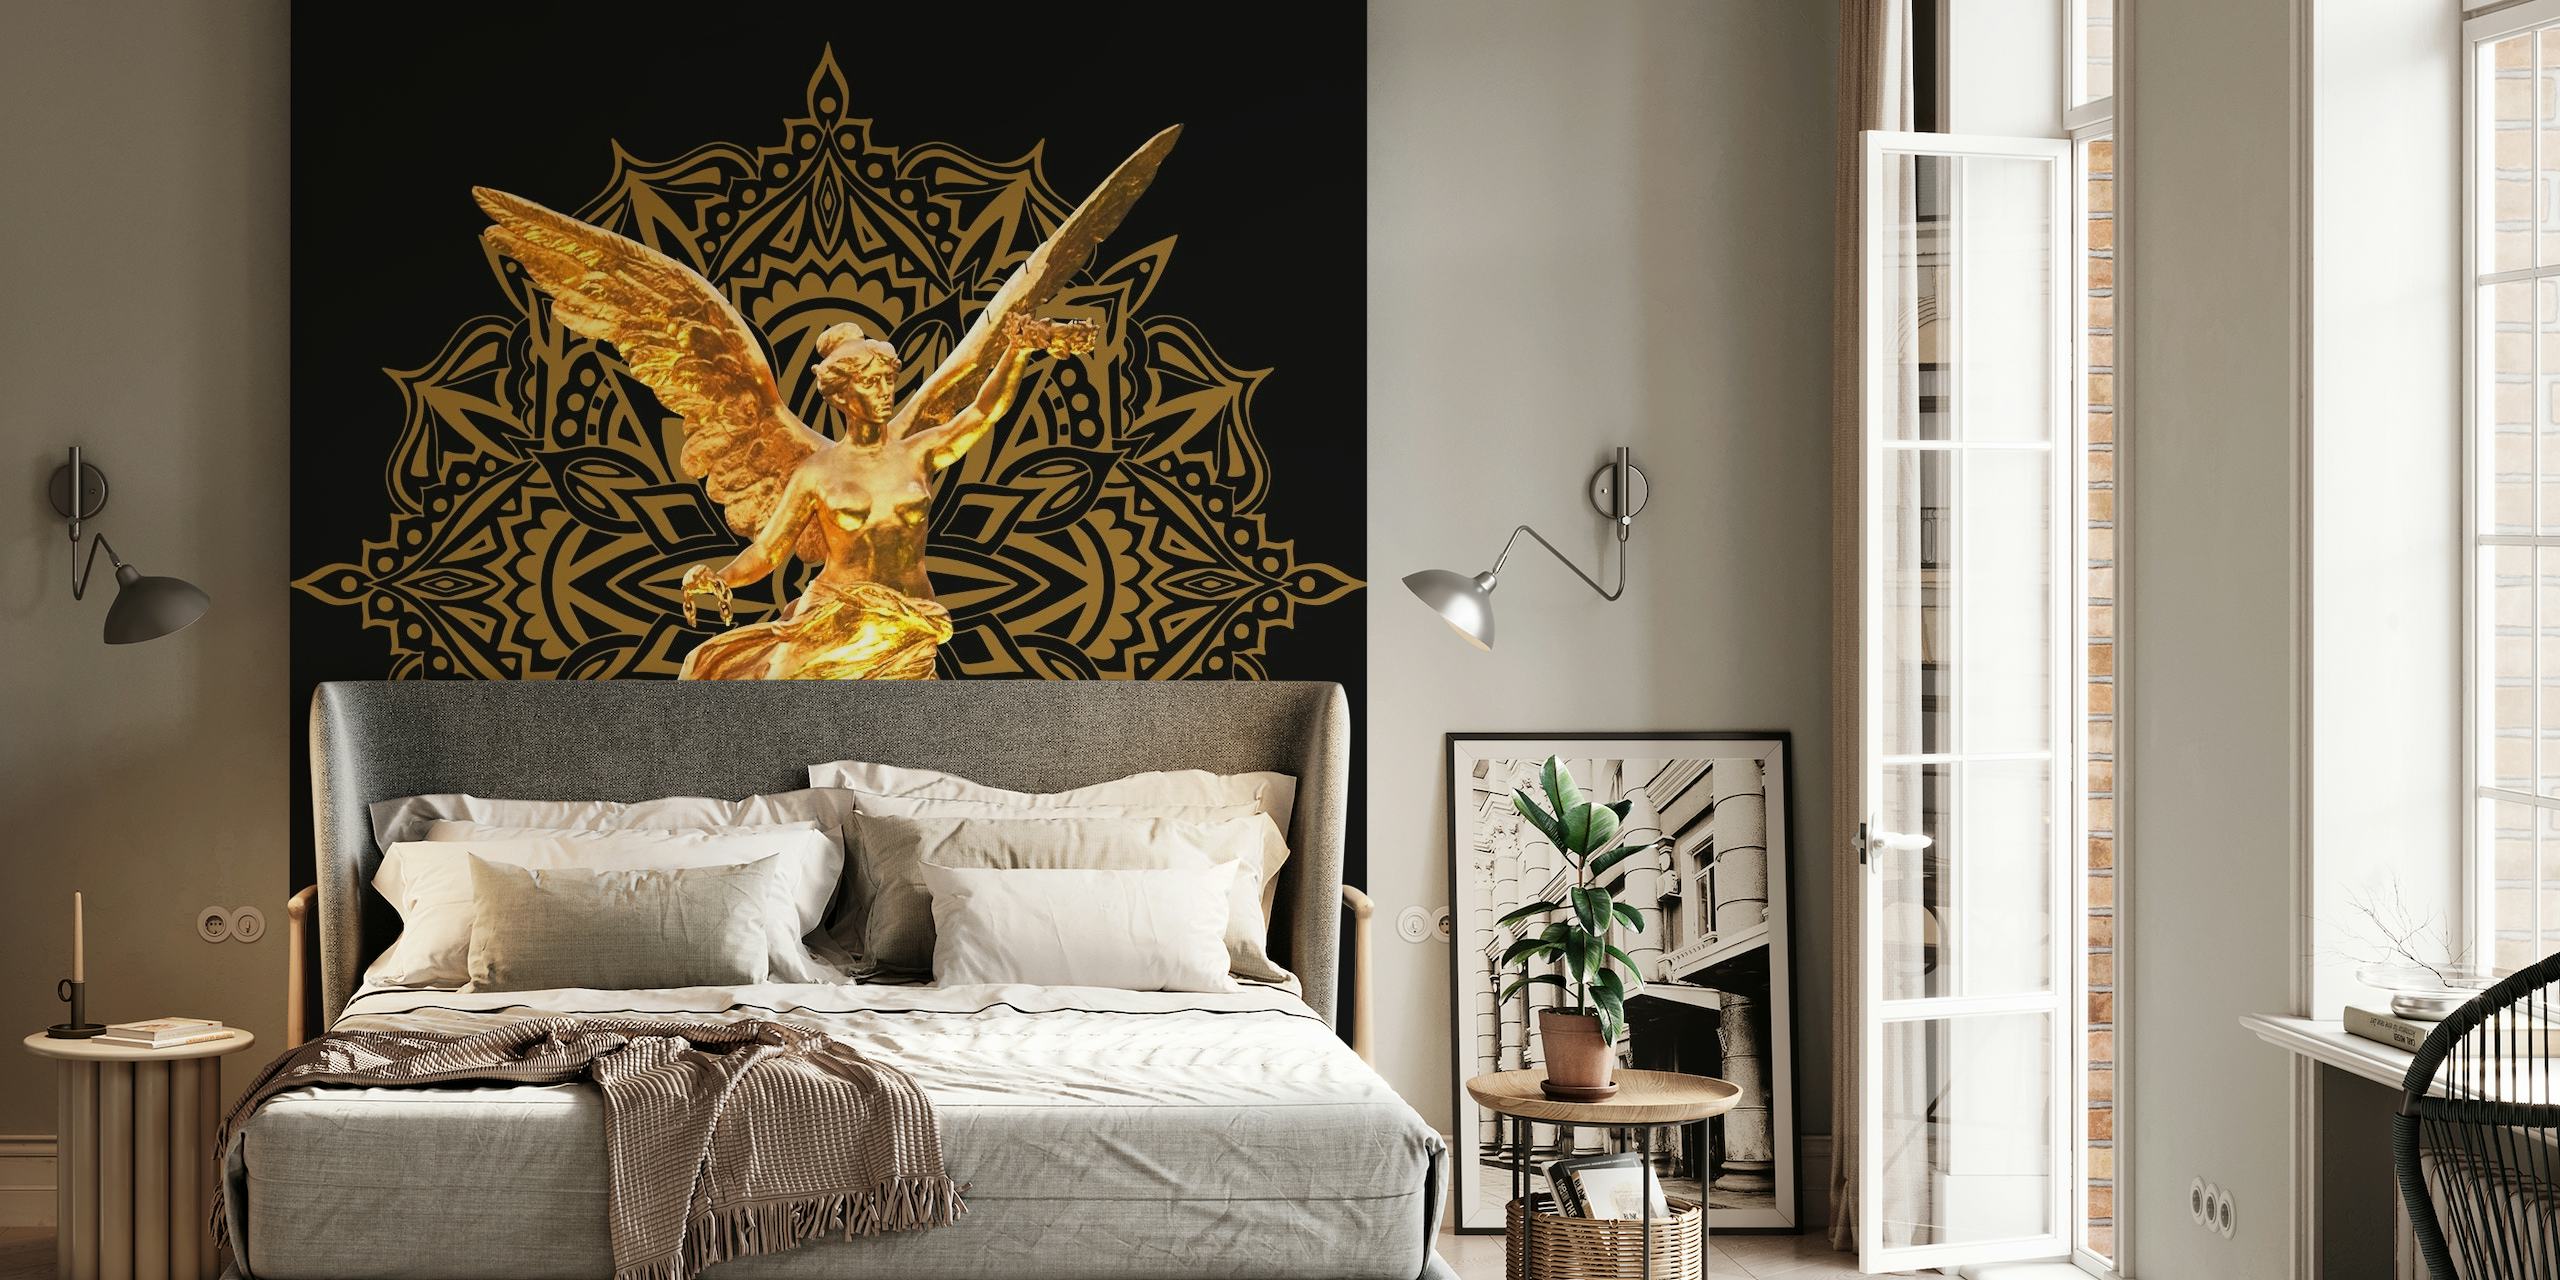 Fototapete „Goldener Engel“ mit Mandalamuster